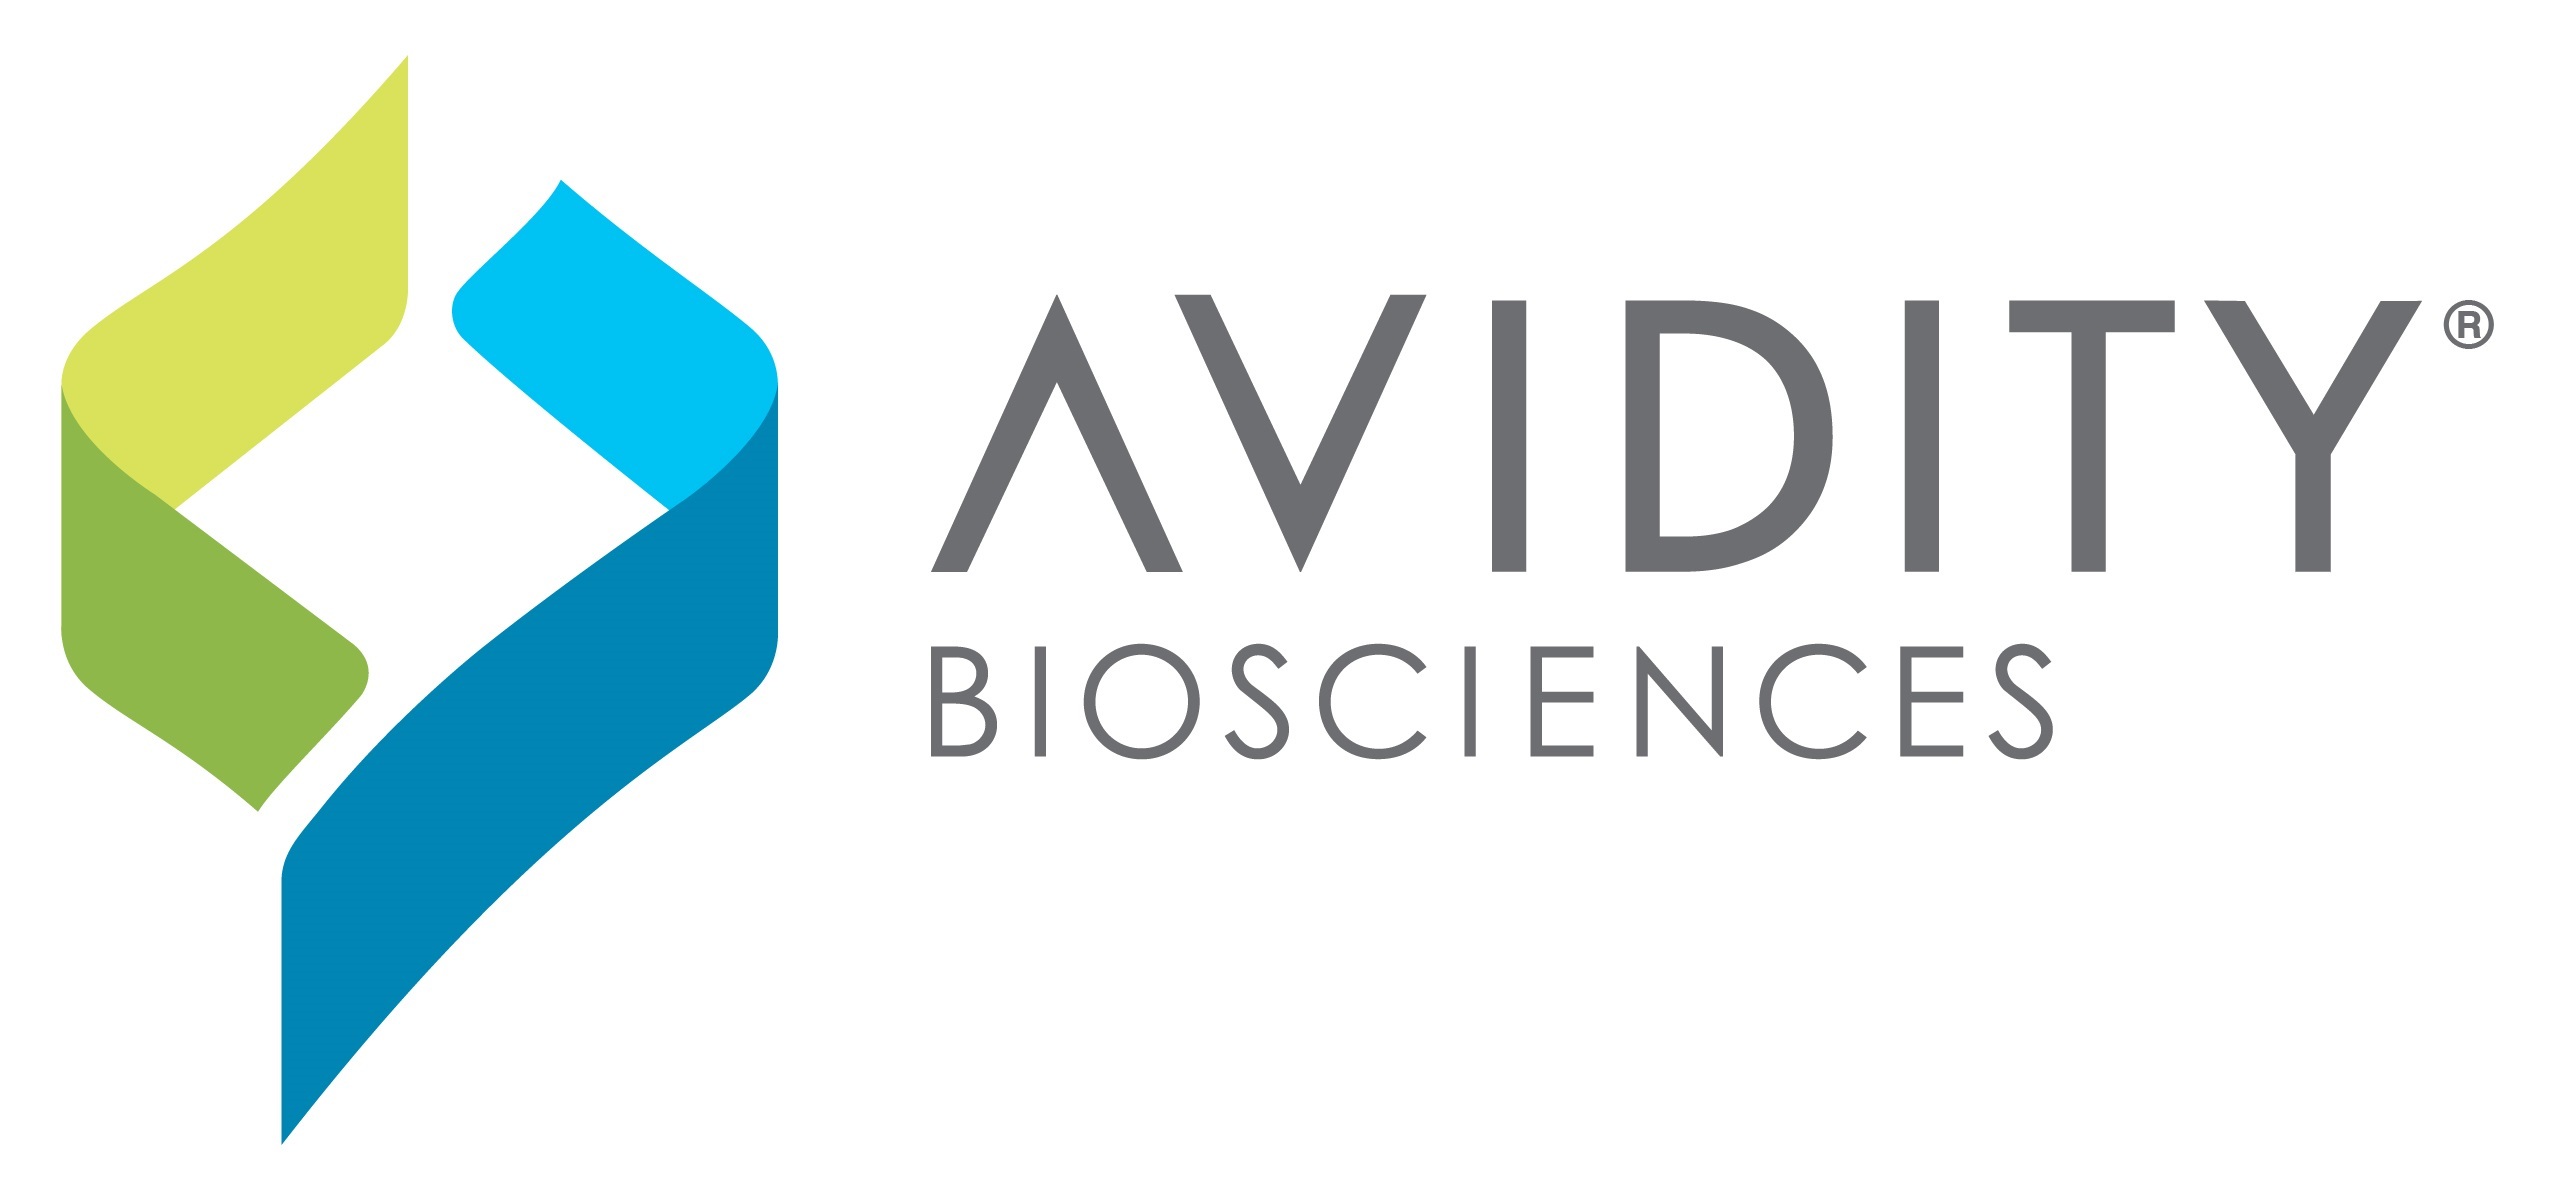 (PRNewsfoto/Avidity Biosciences, Inc.)